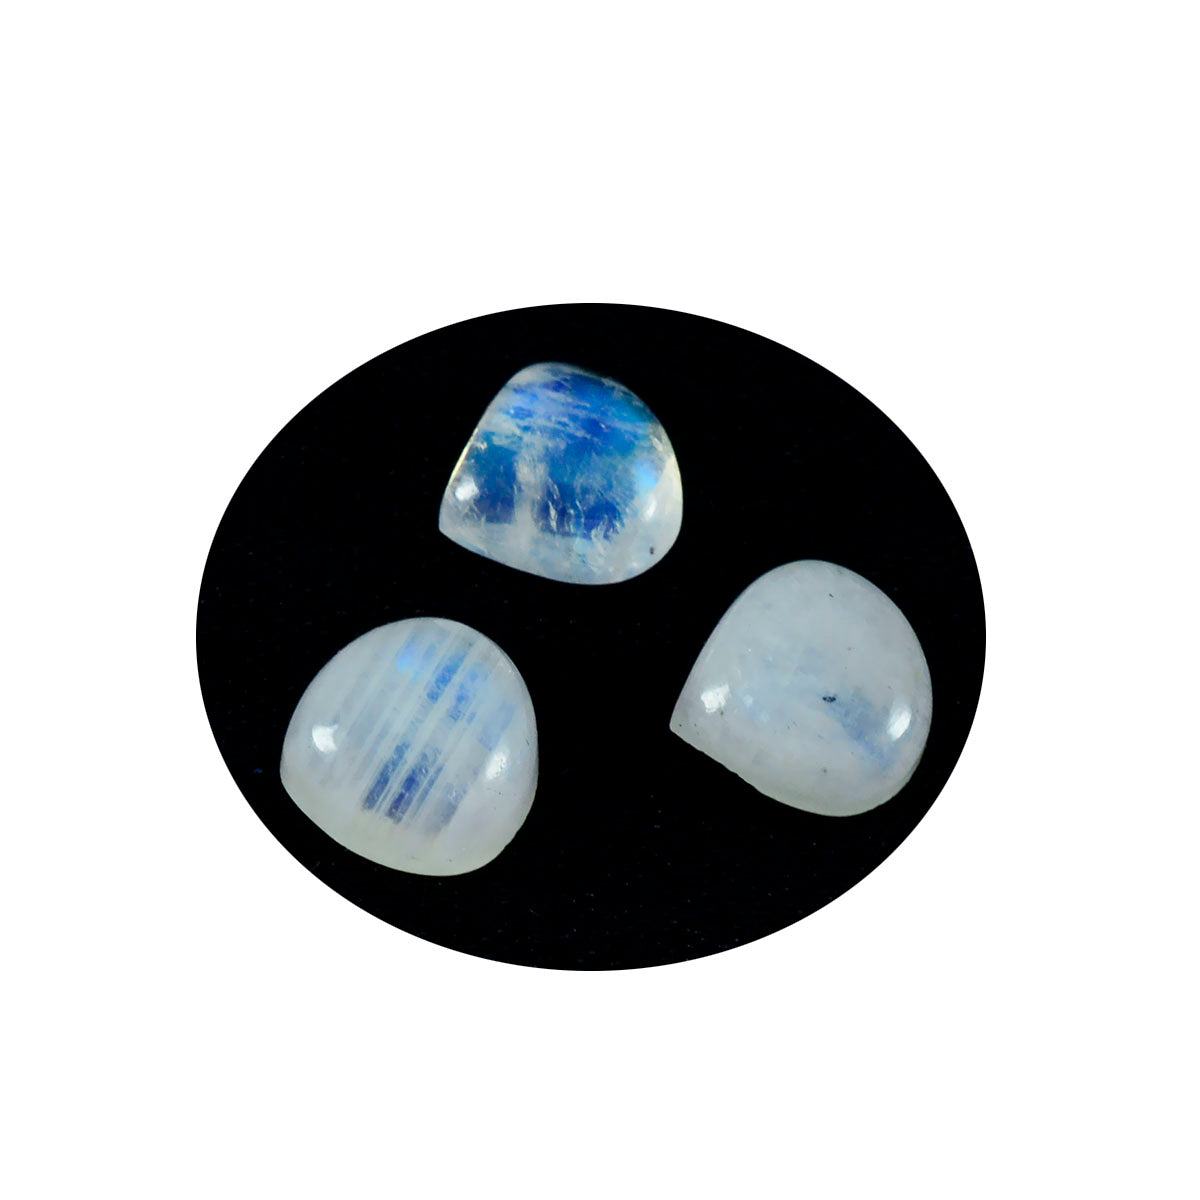 Riyogems 1 Stück weißer Regenbogen-Mondstein-Cabochon, 13 x 13 mm, Herzform, süßer Qualitäts-Edelstein